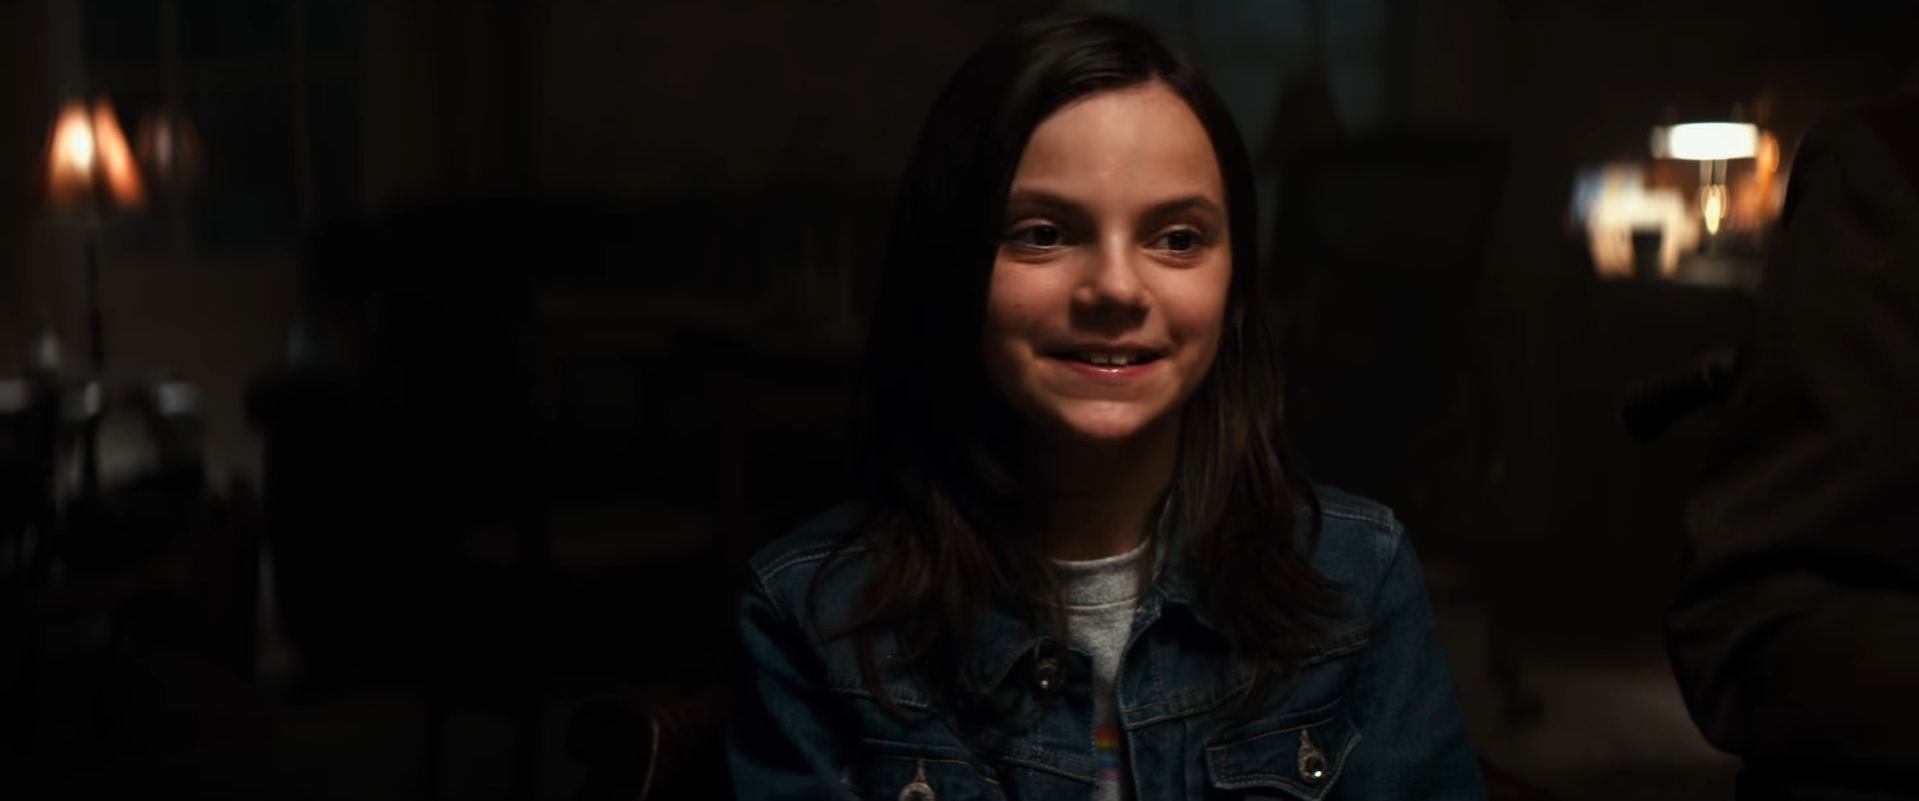 Logan Trailer - Logan daughter